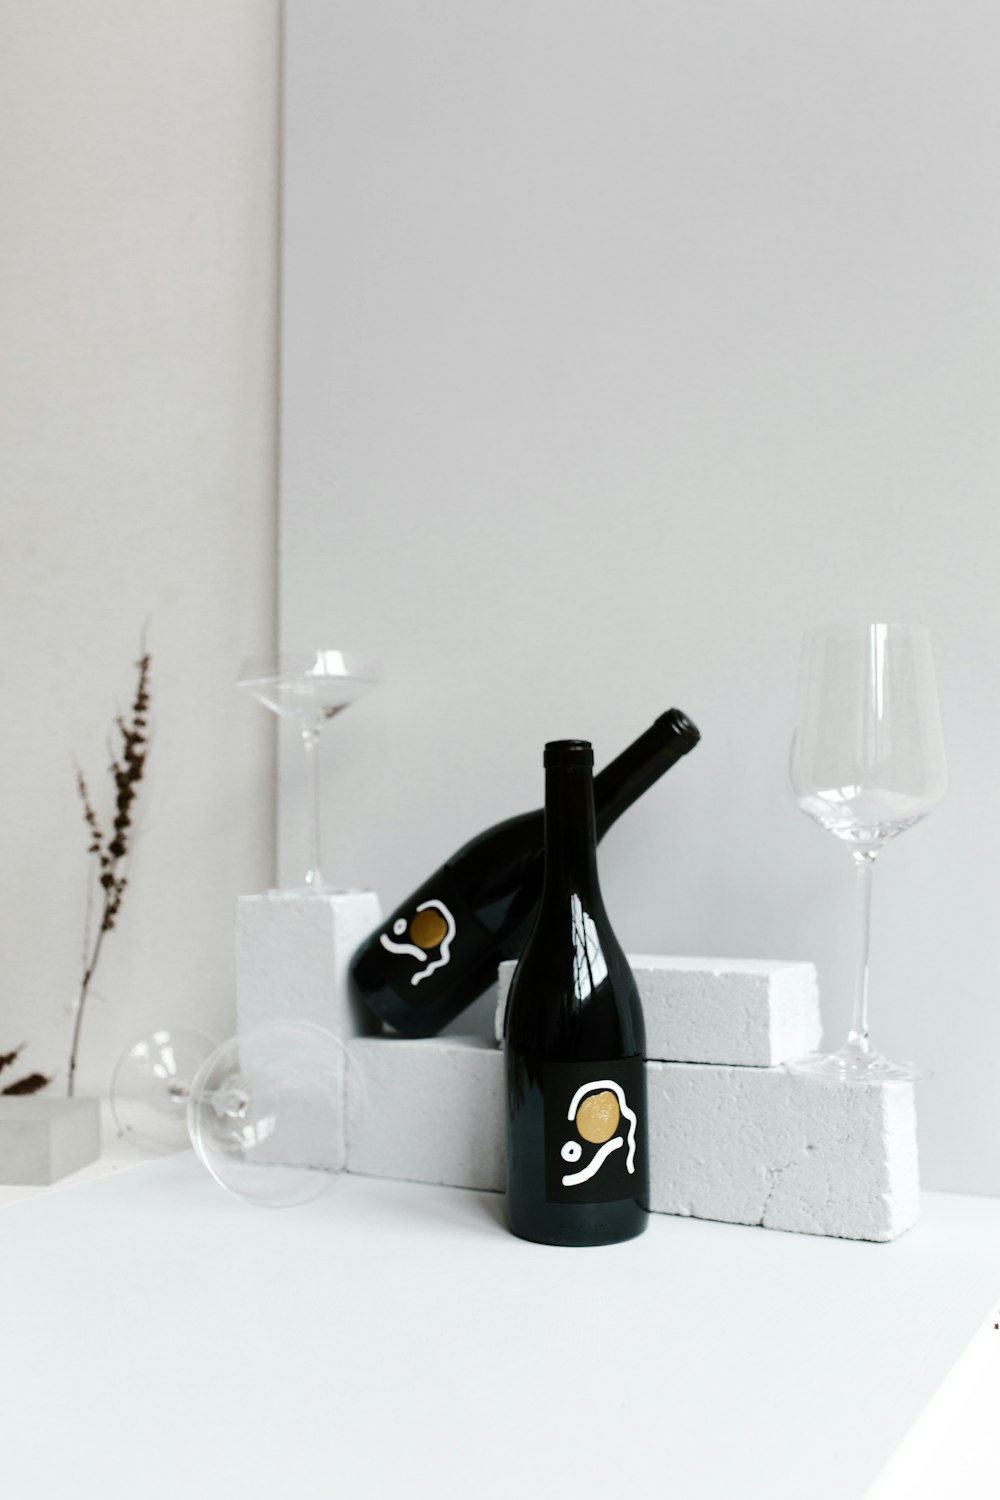 due bottiglie di vino nere e tre bicchieri da vino su superficie bianca